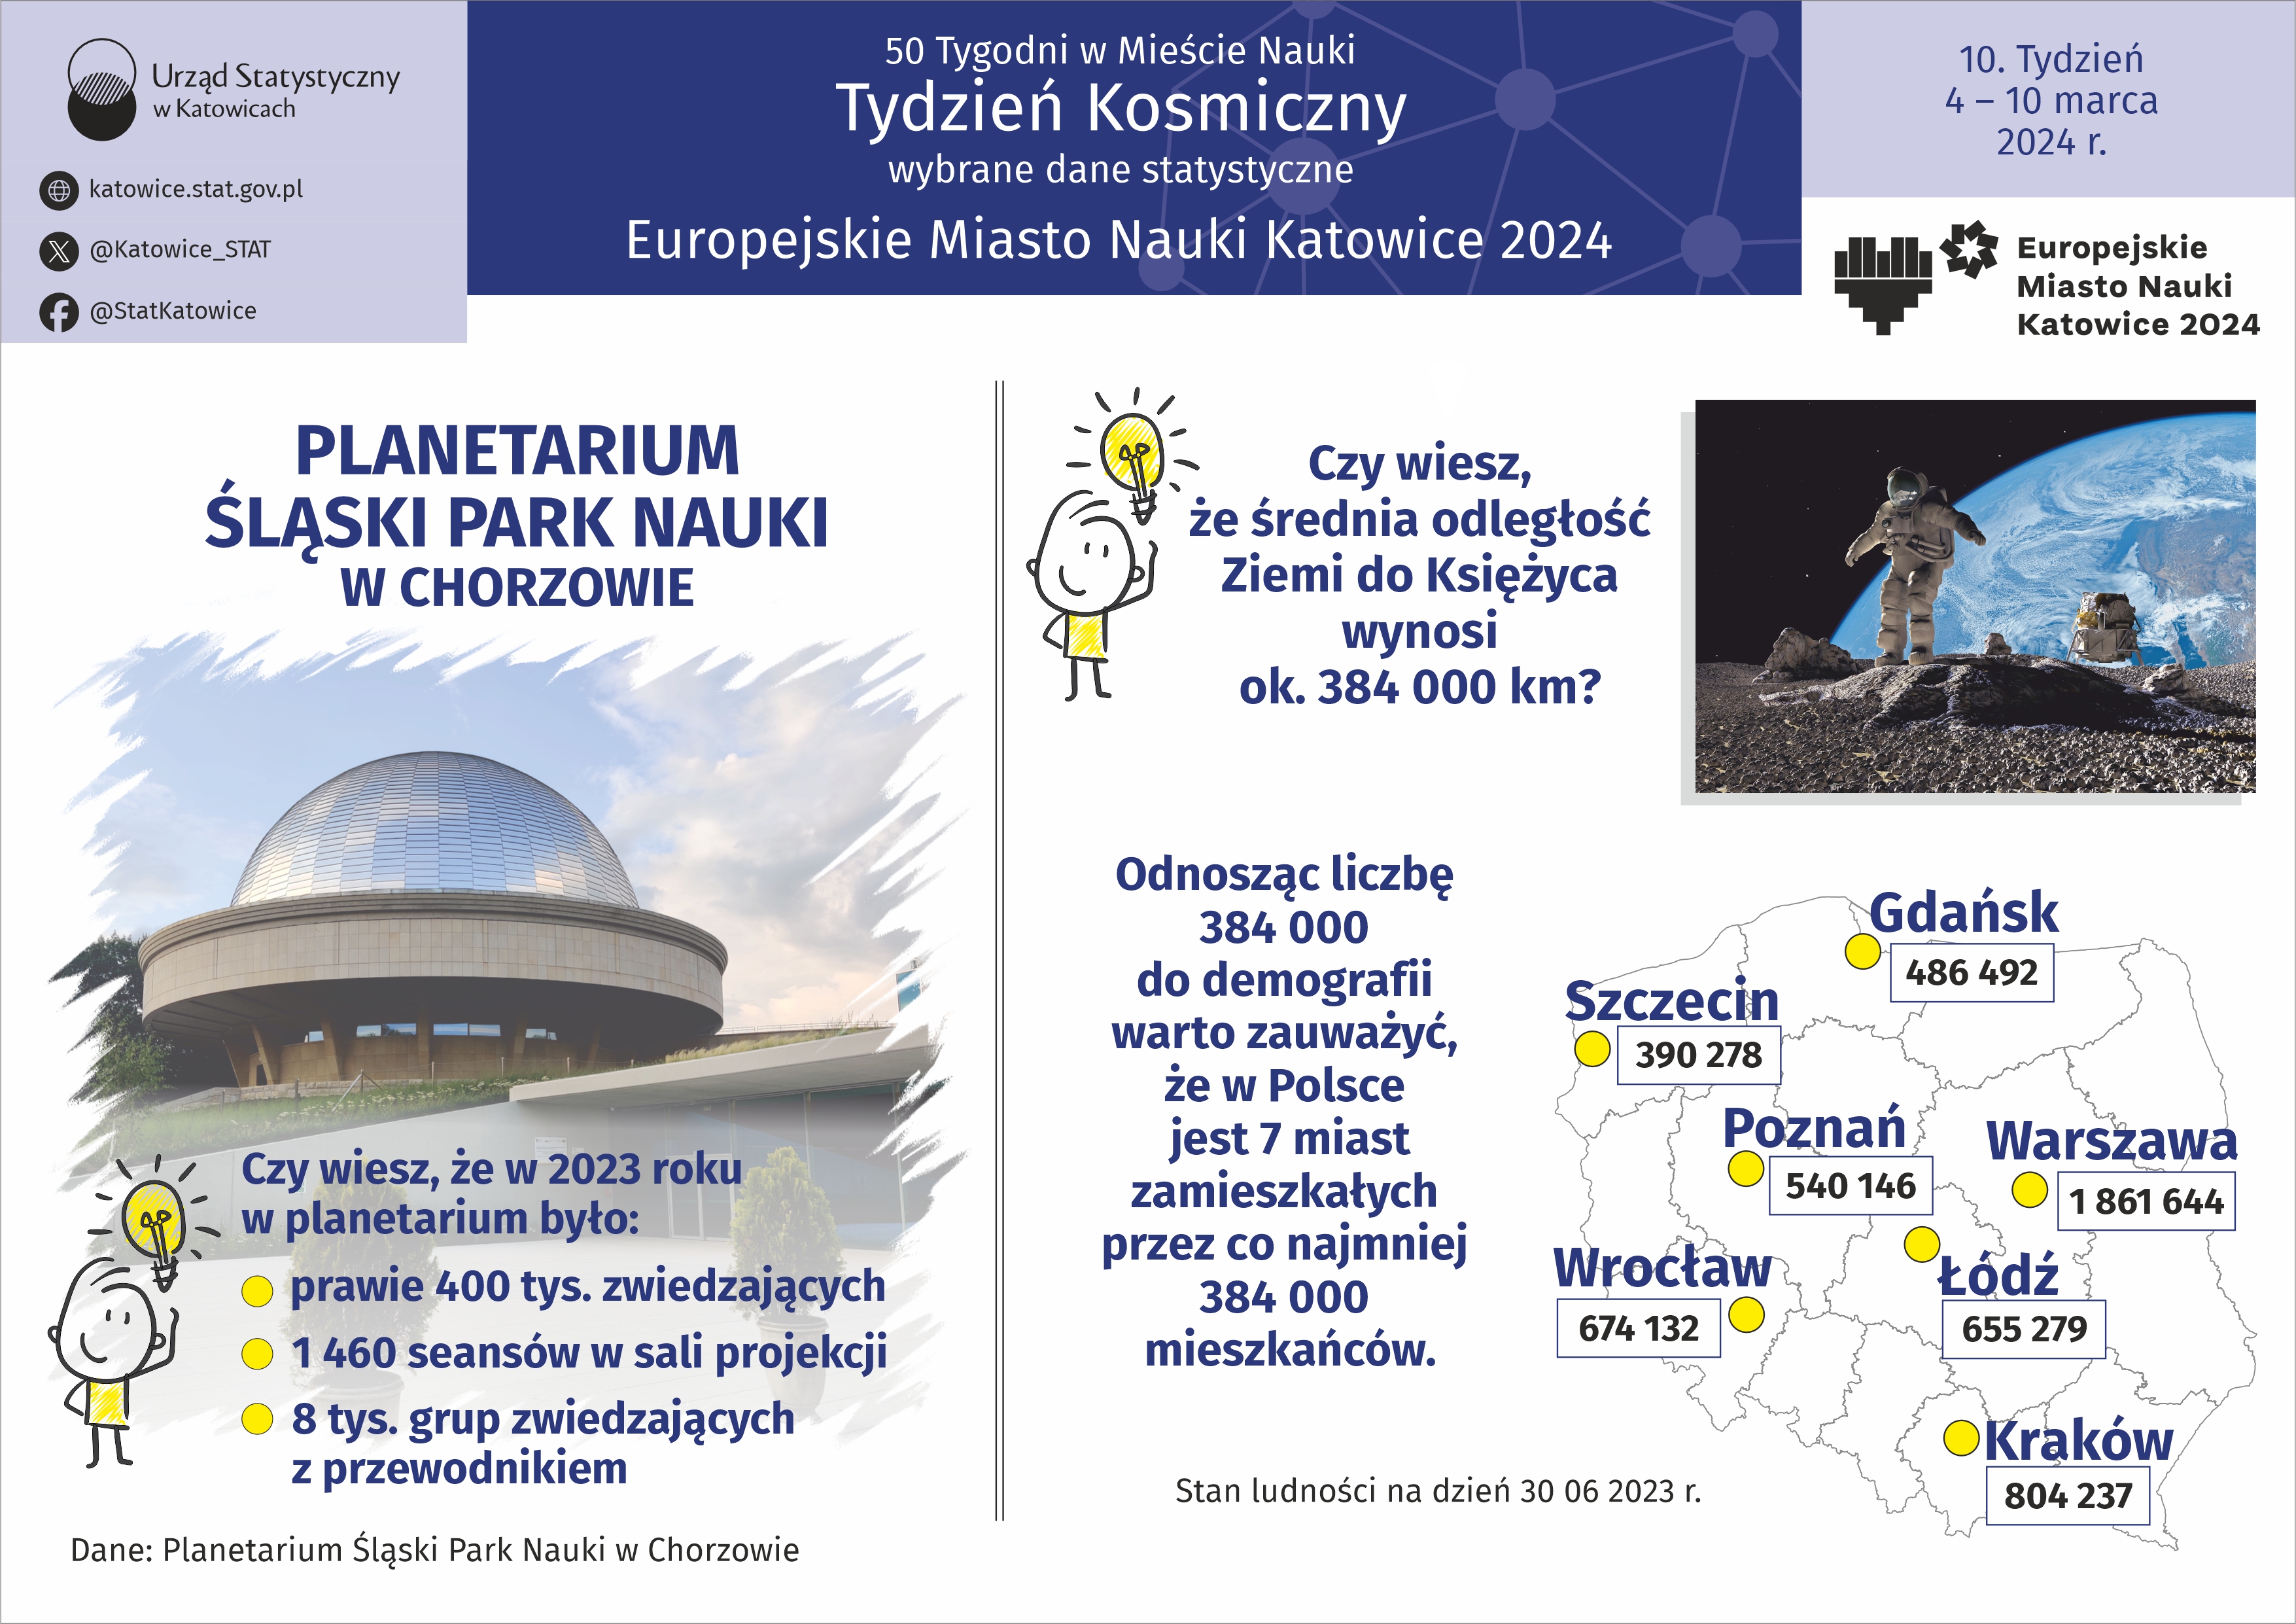 Europejskie Miasto Nauki Katowice 2024. Tydzień Kosmiczny (Infografika)